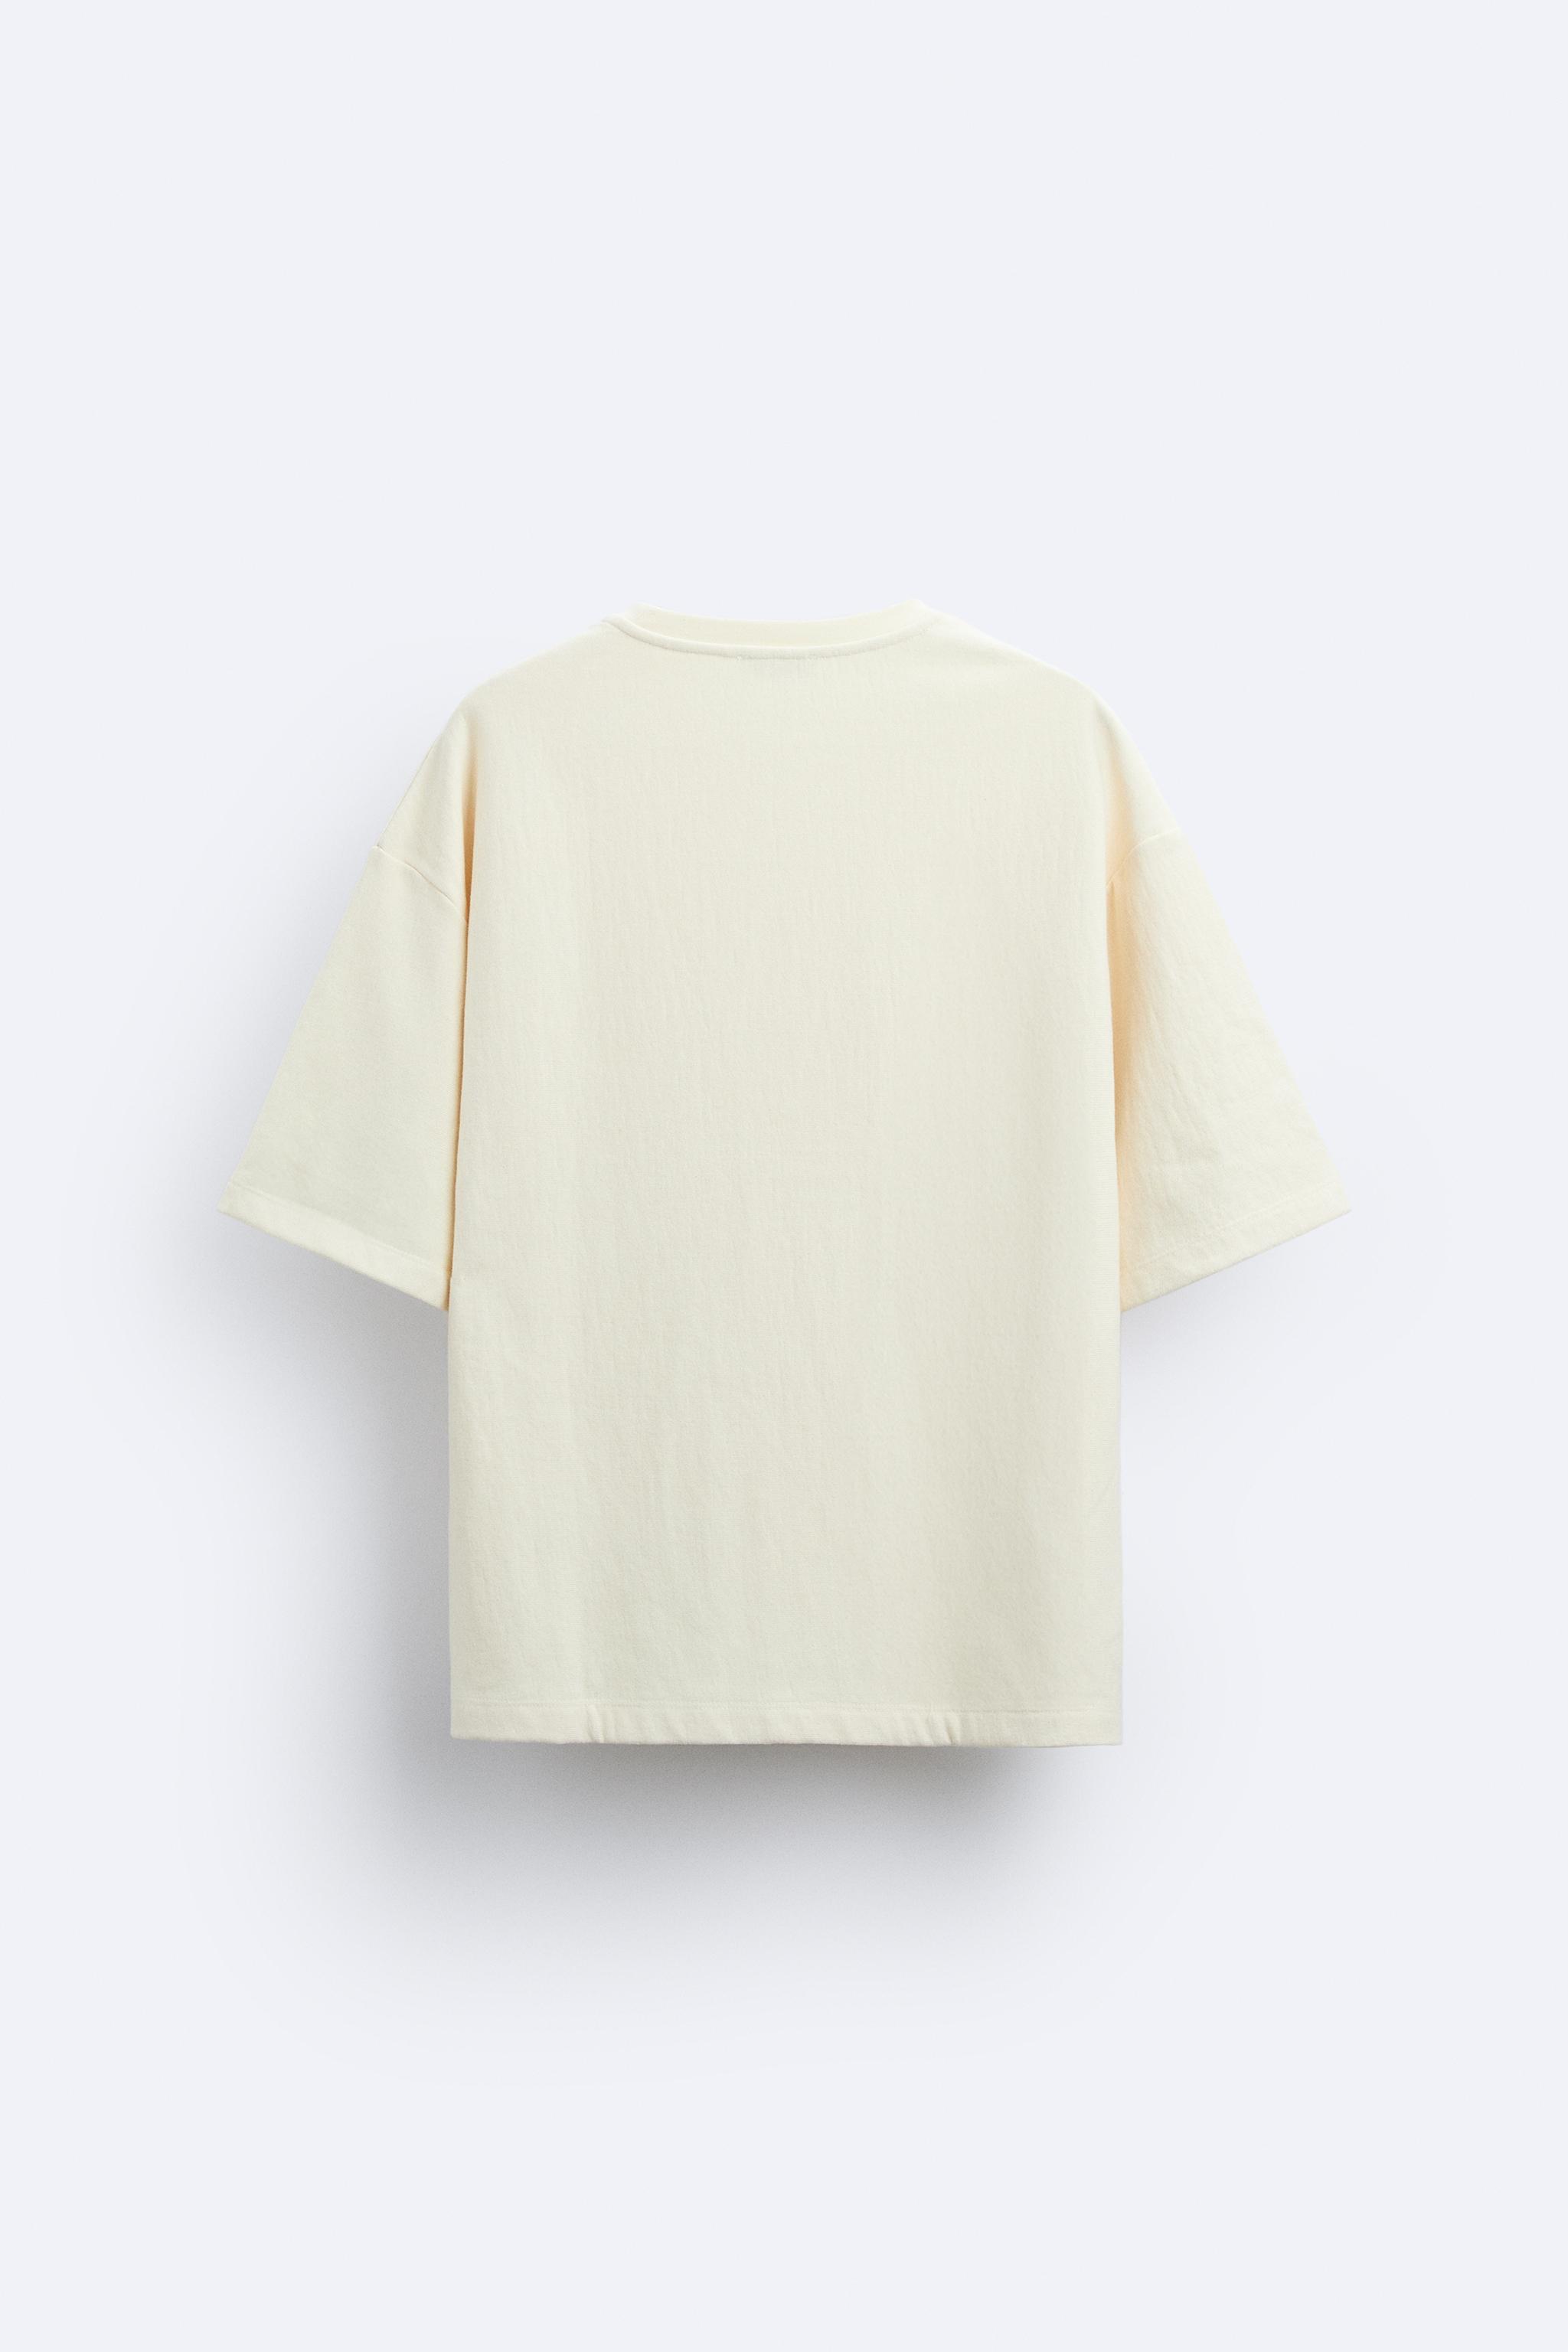 テクスチャースウェットシャツ - オフホワイト | ZARA Japan / 日本